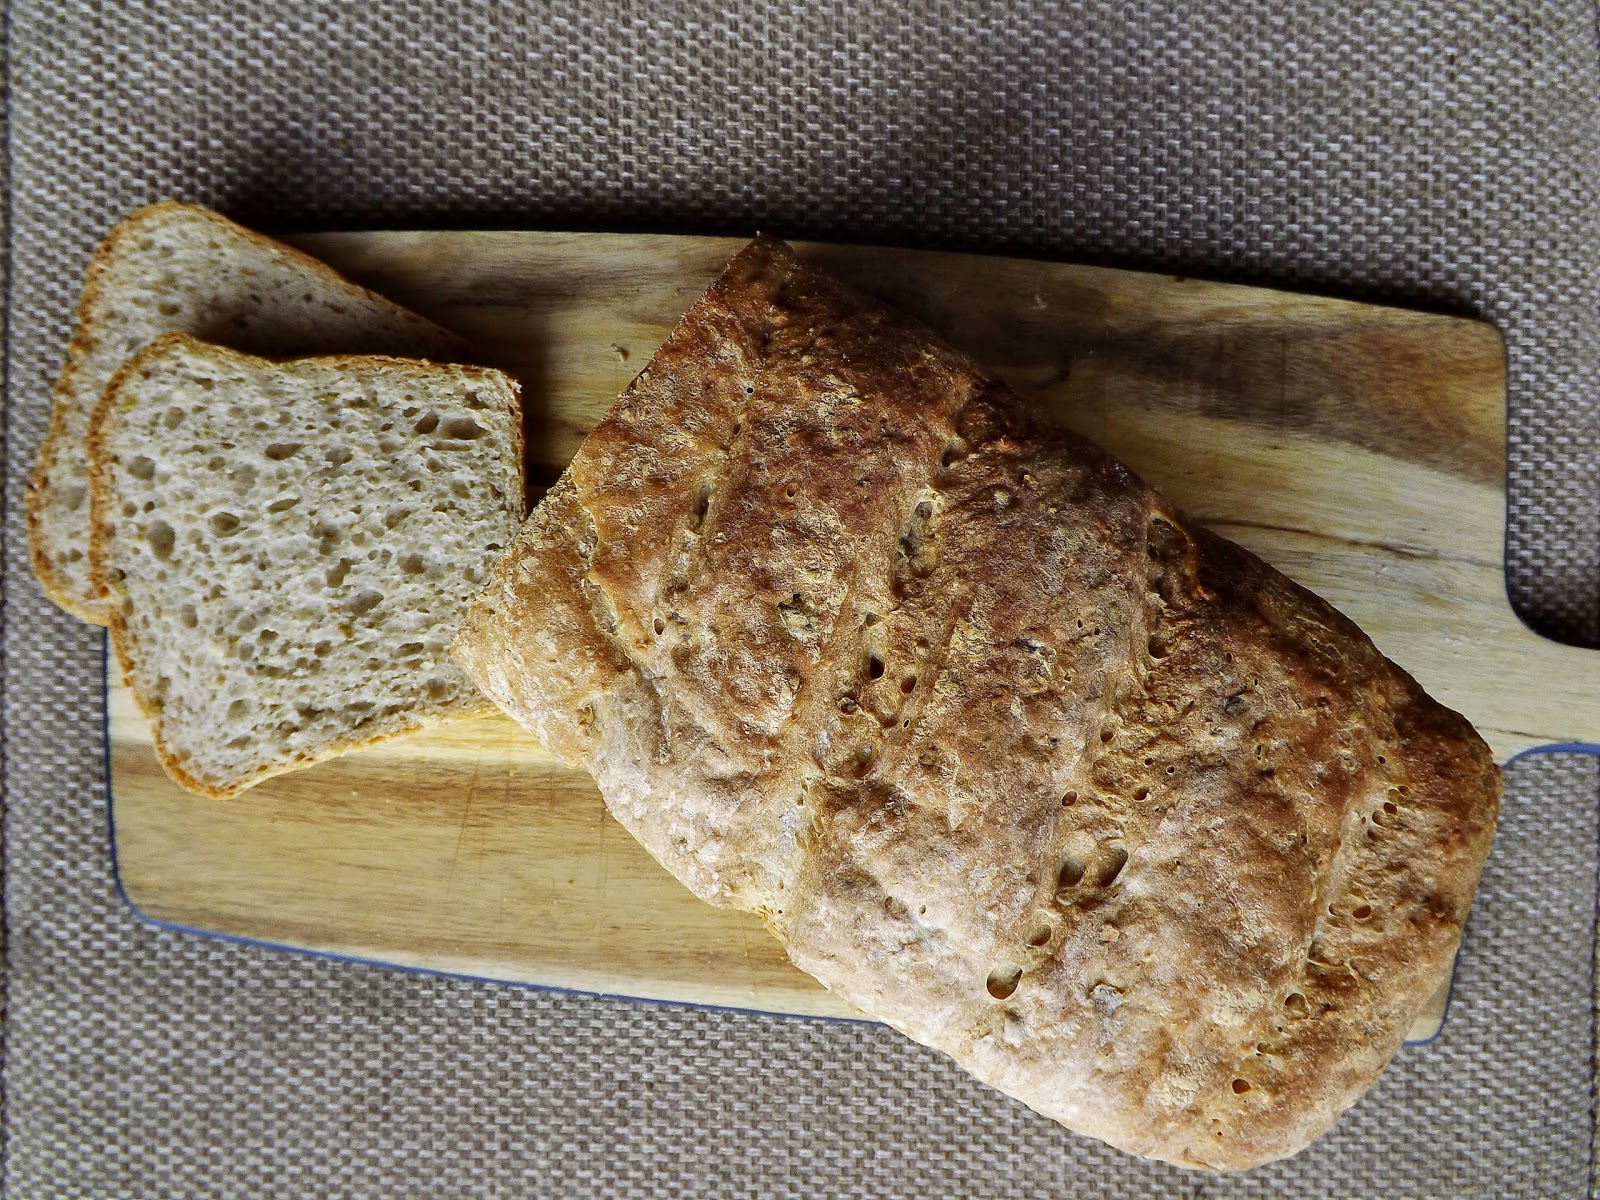 Chleb pszenno żytni z oliwkami